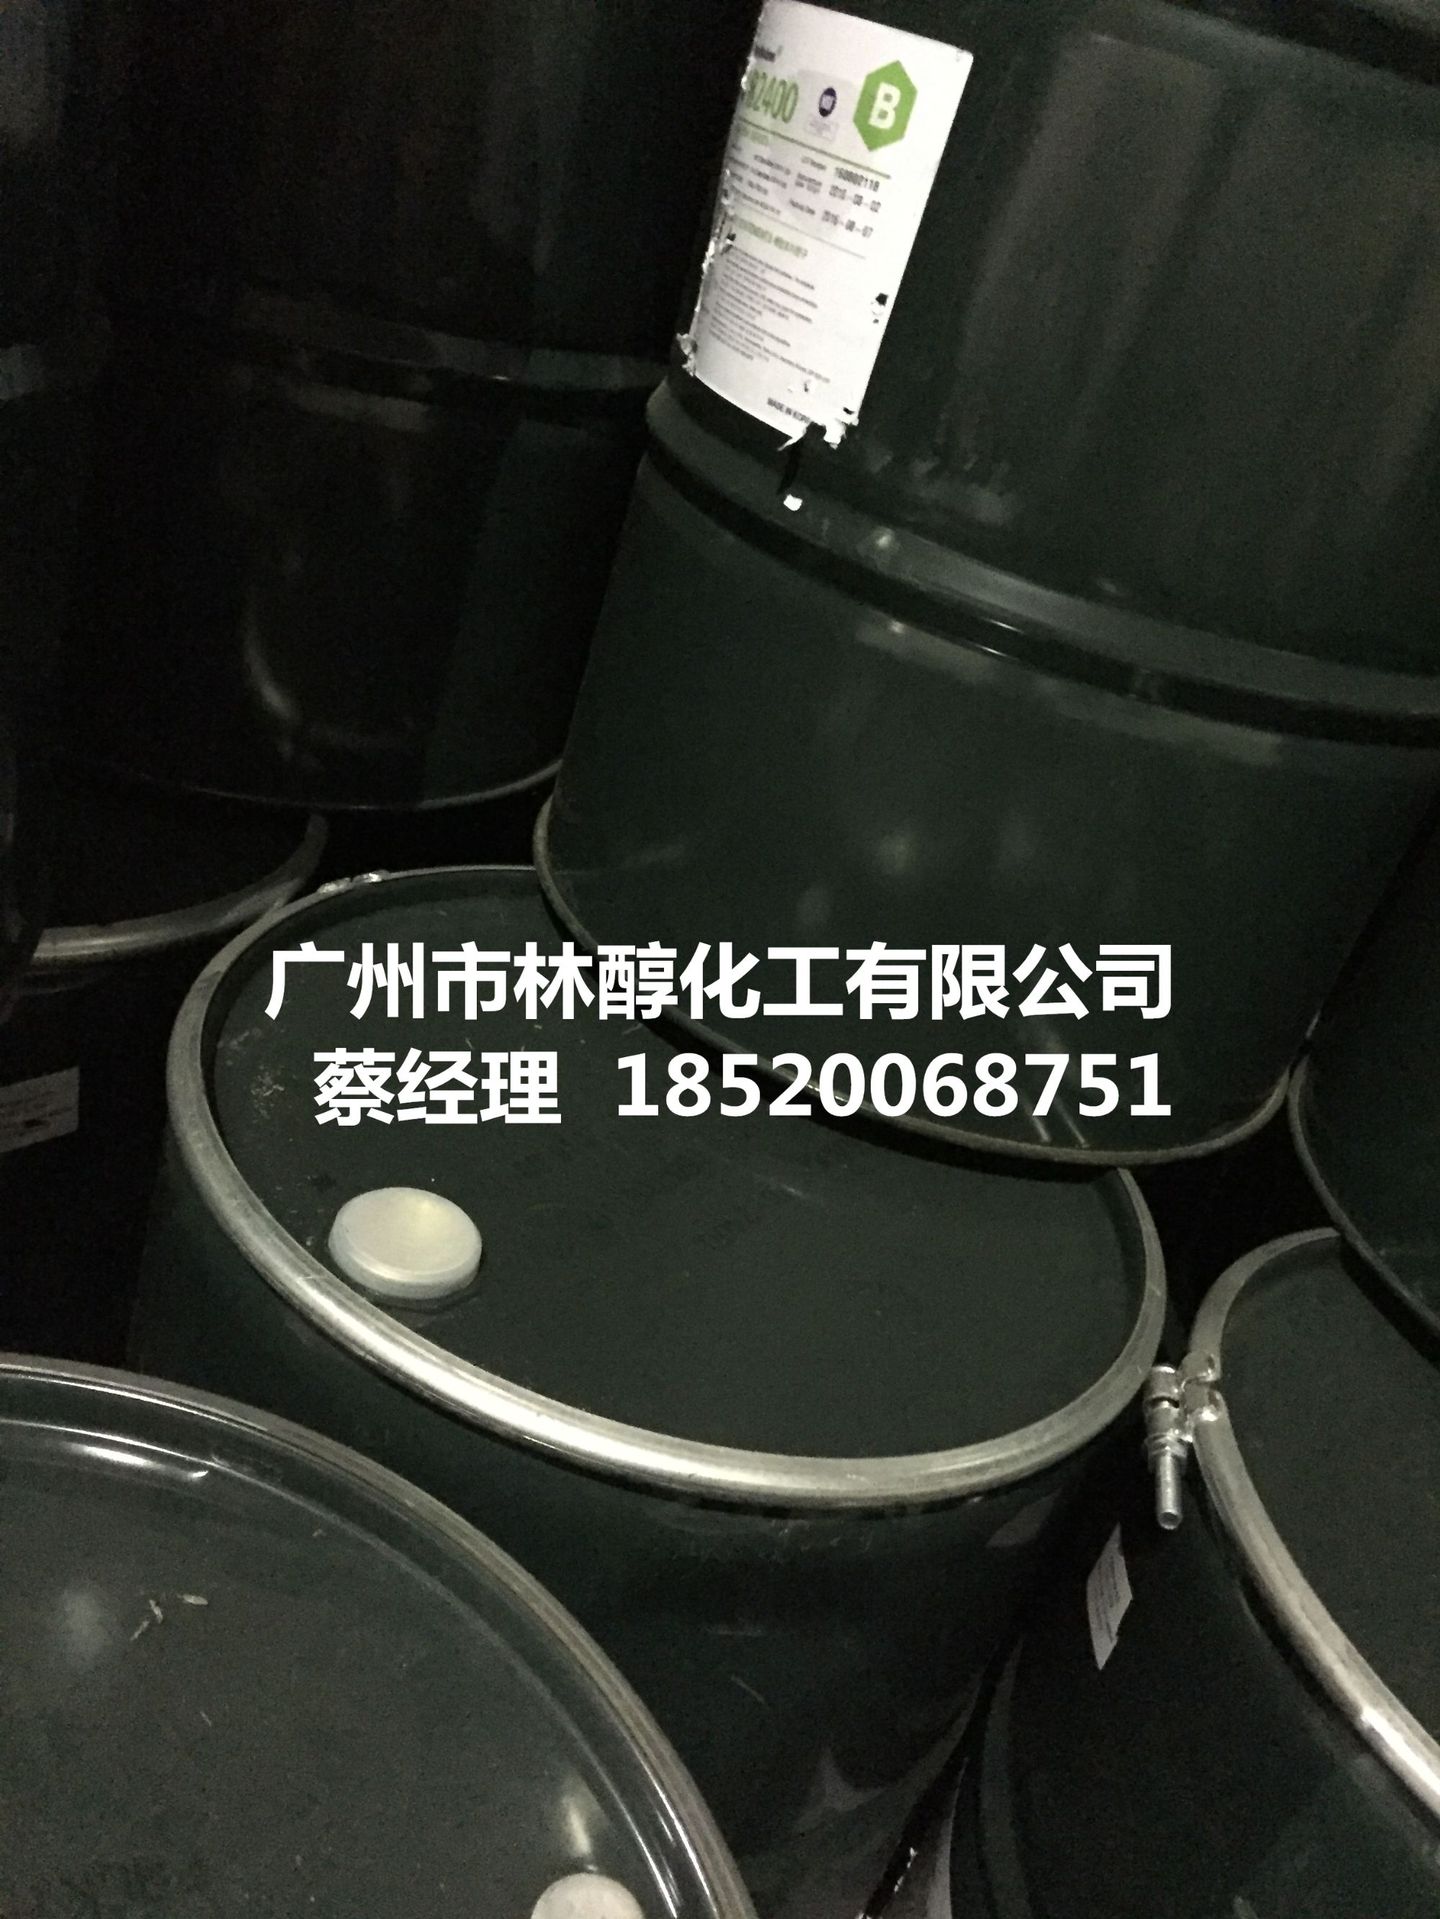 000聚异丁烯PB-广州林醇-2020052301.jpg